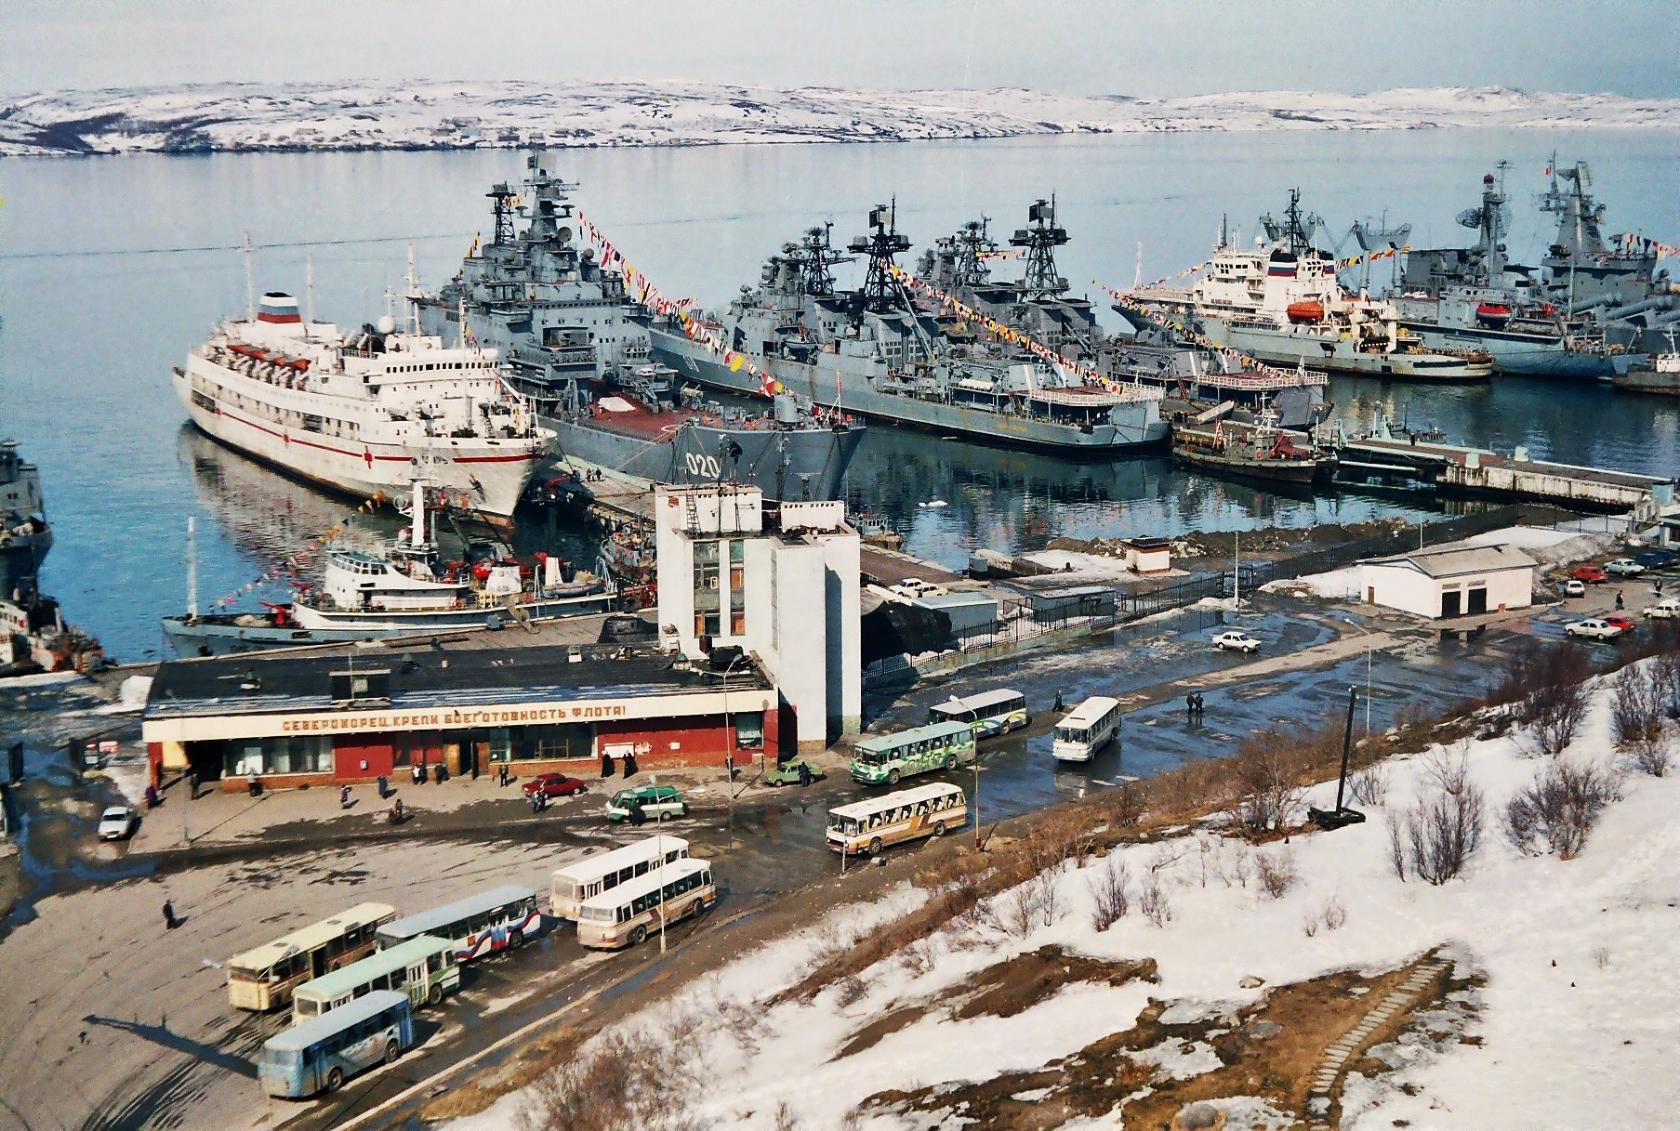 Россия январь 2004